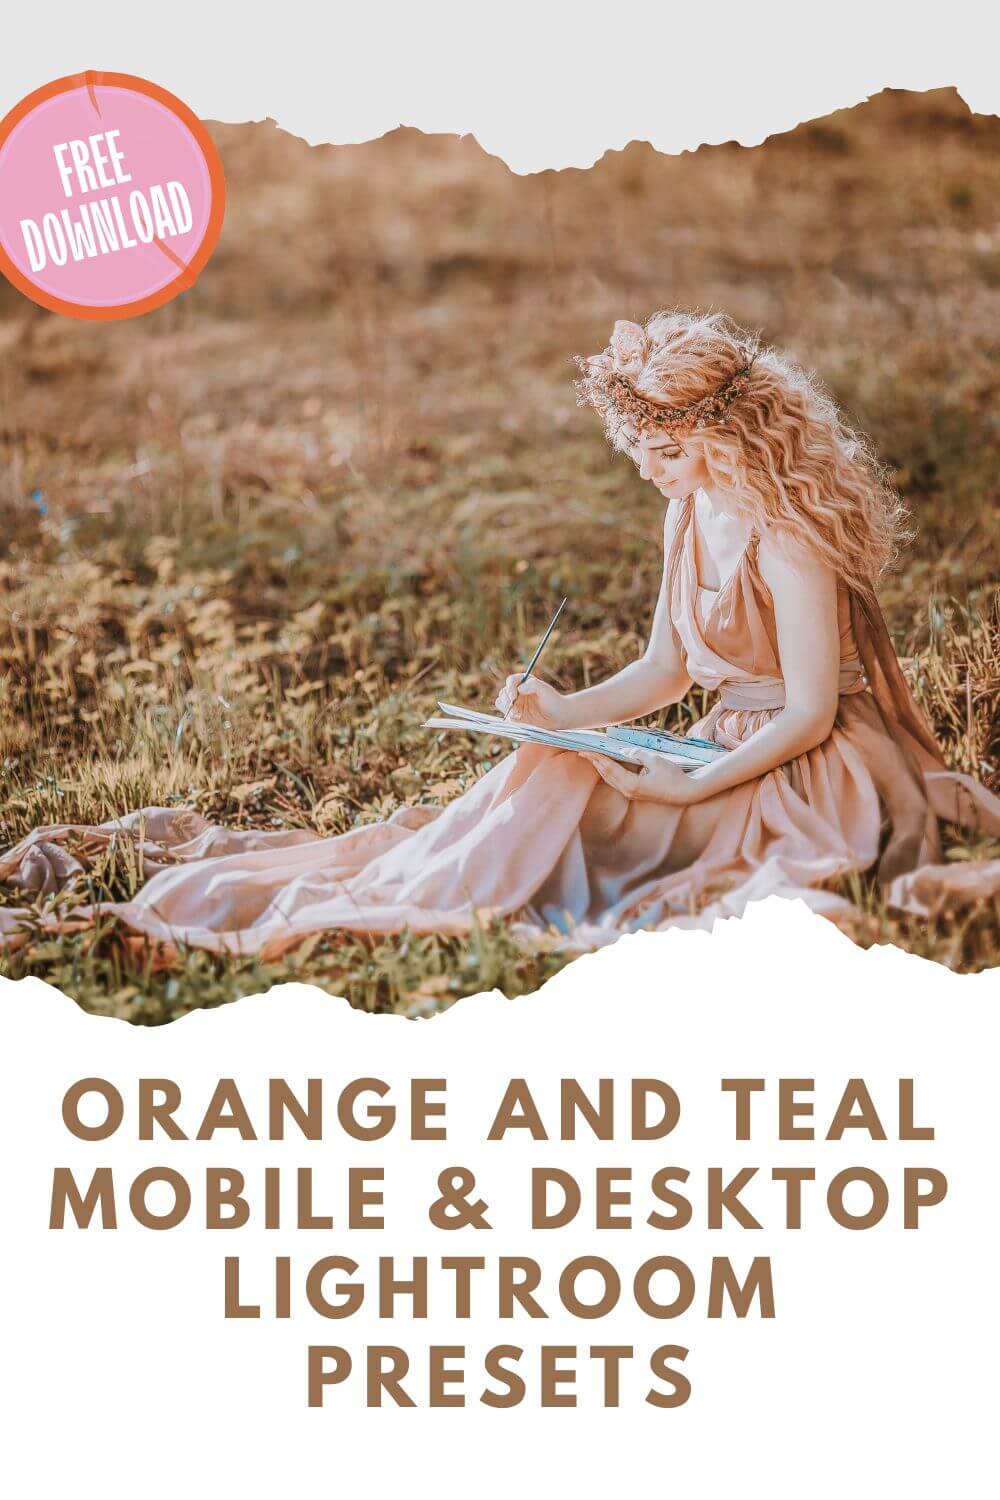 Orange and Teal Mobile & Desktop Lightroom Presets Pinterest